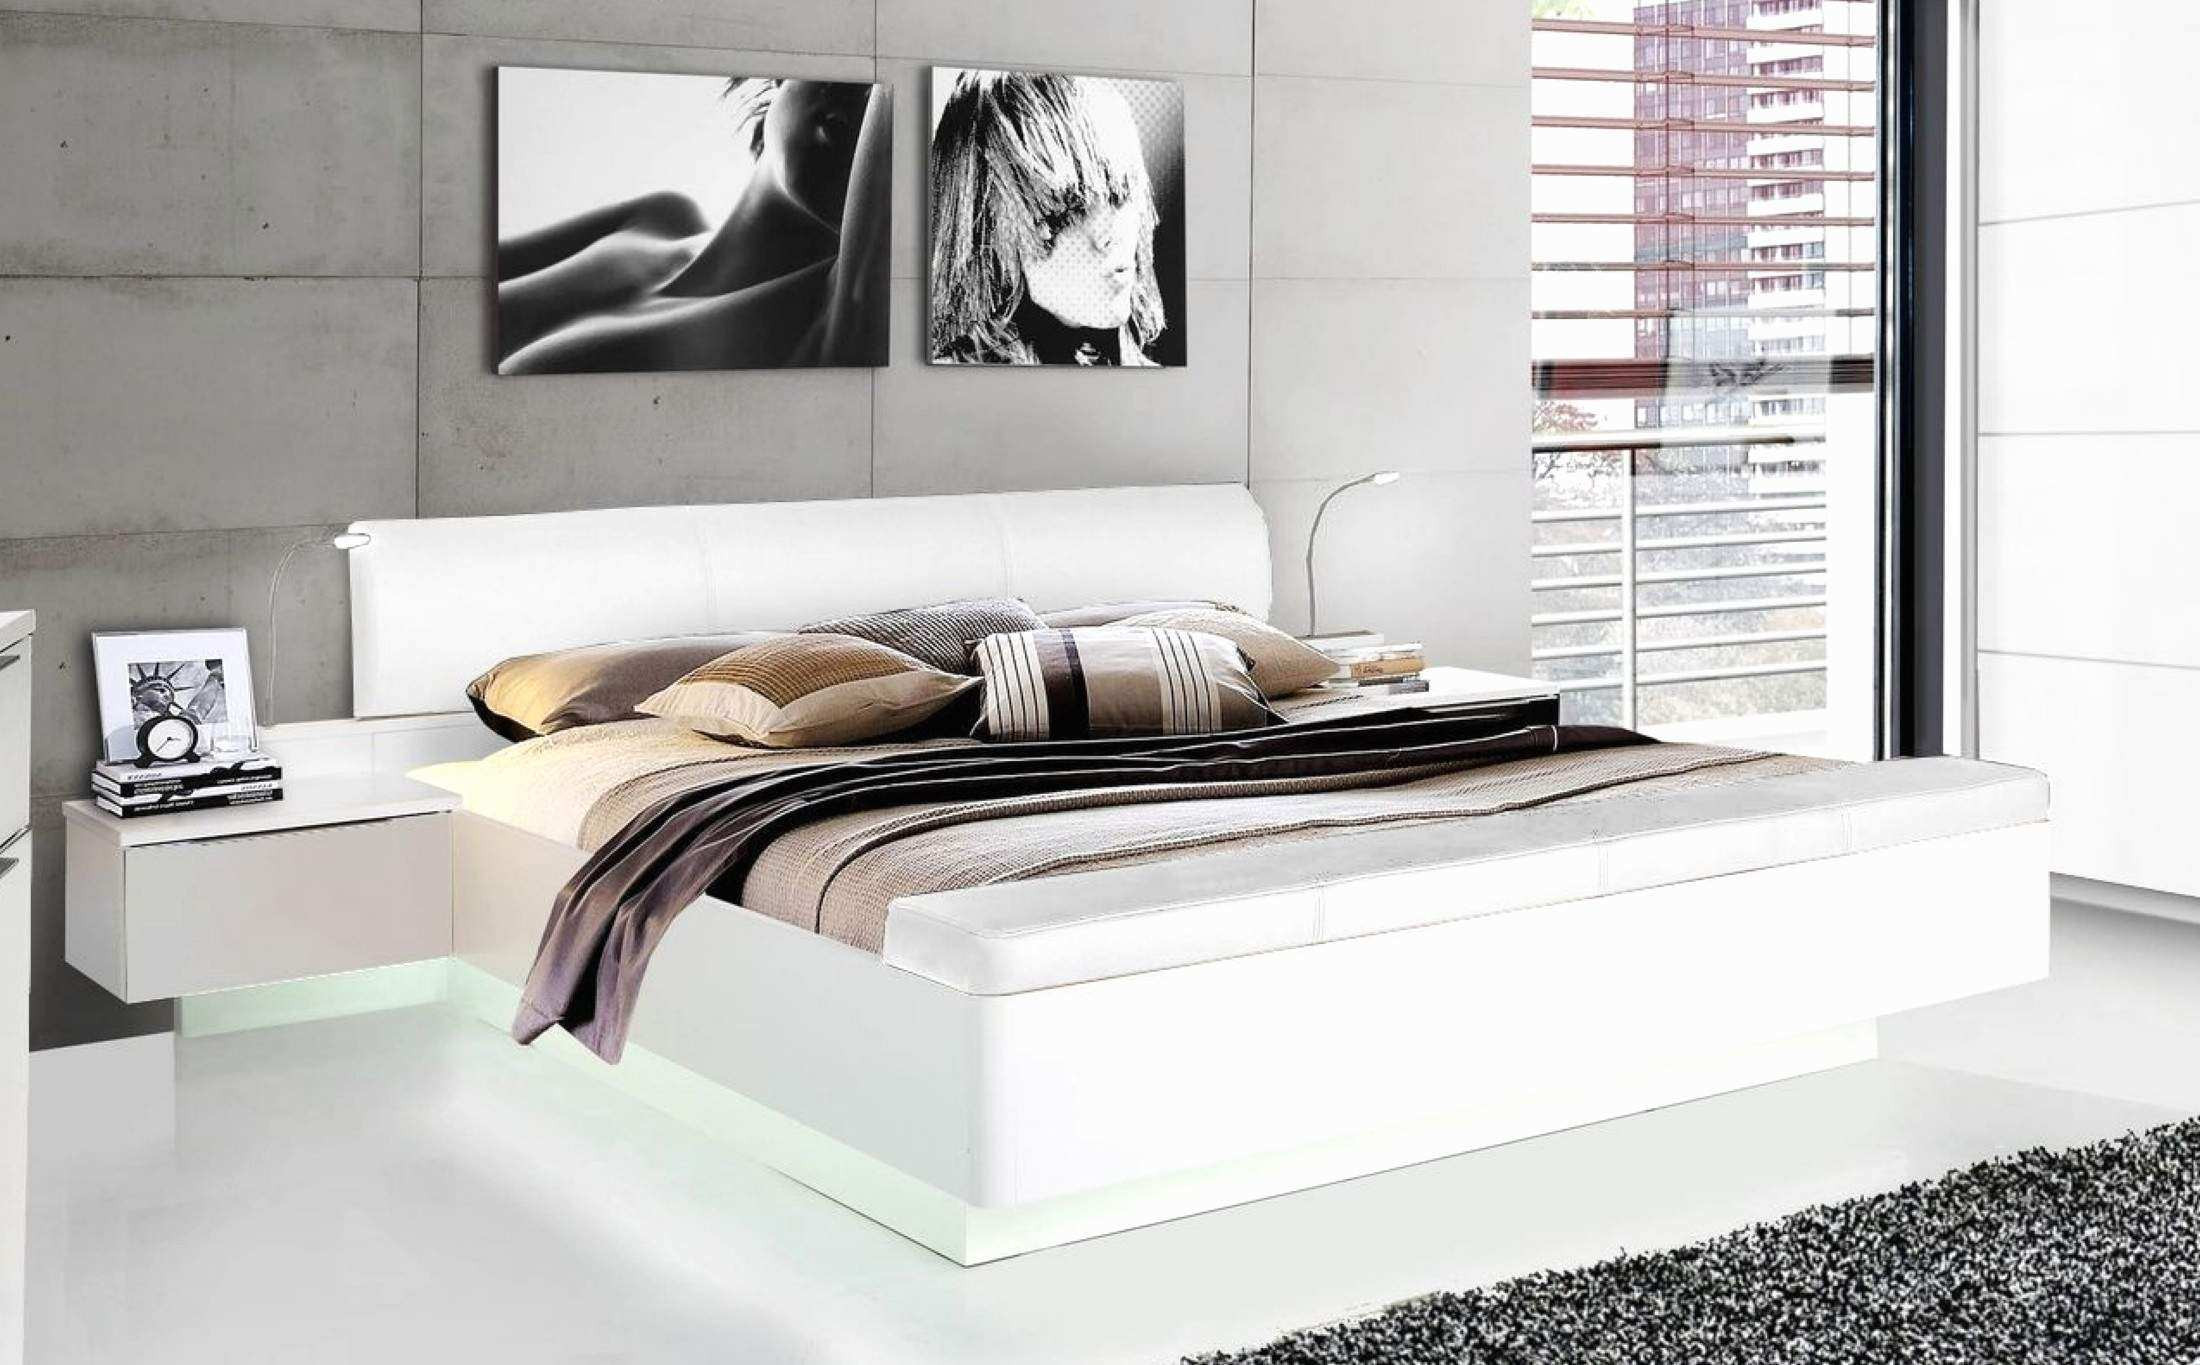 Gebrauchte Betten
 Gebrauchte Betten Kaufen Gebrauchte Betten Lattenroste